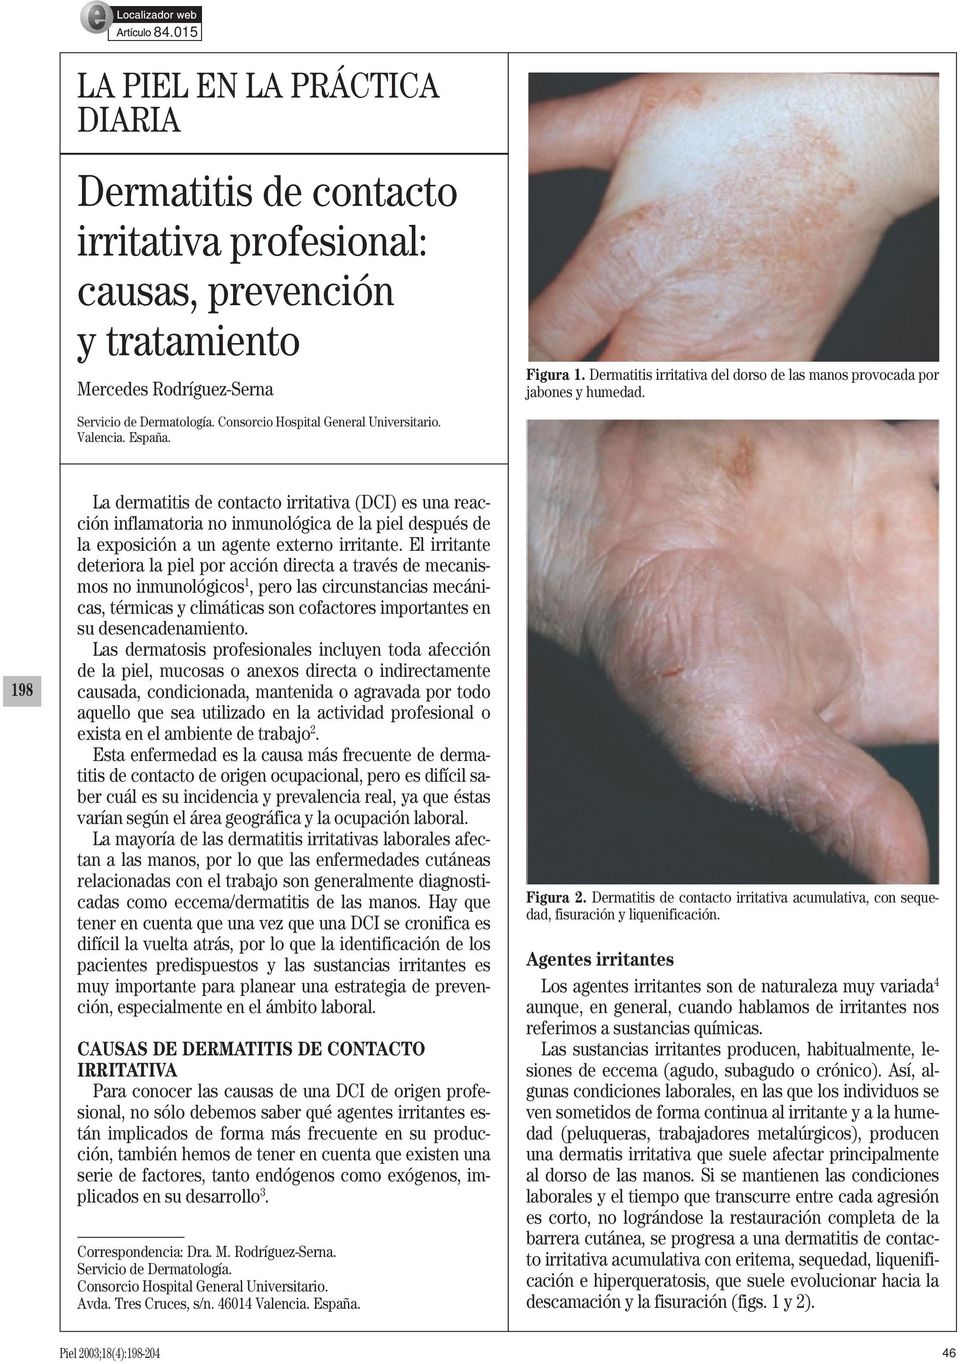 198 La dermatitis de contacto irritativa (DCI) es una reacción inflamatoria no inmunológica de la piel después de la exposición a un agente externo irritante.